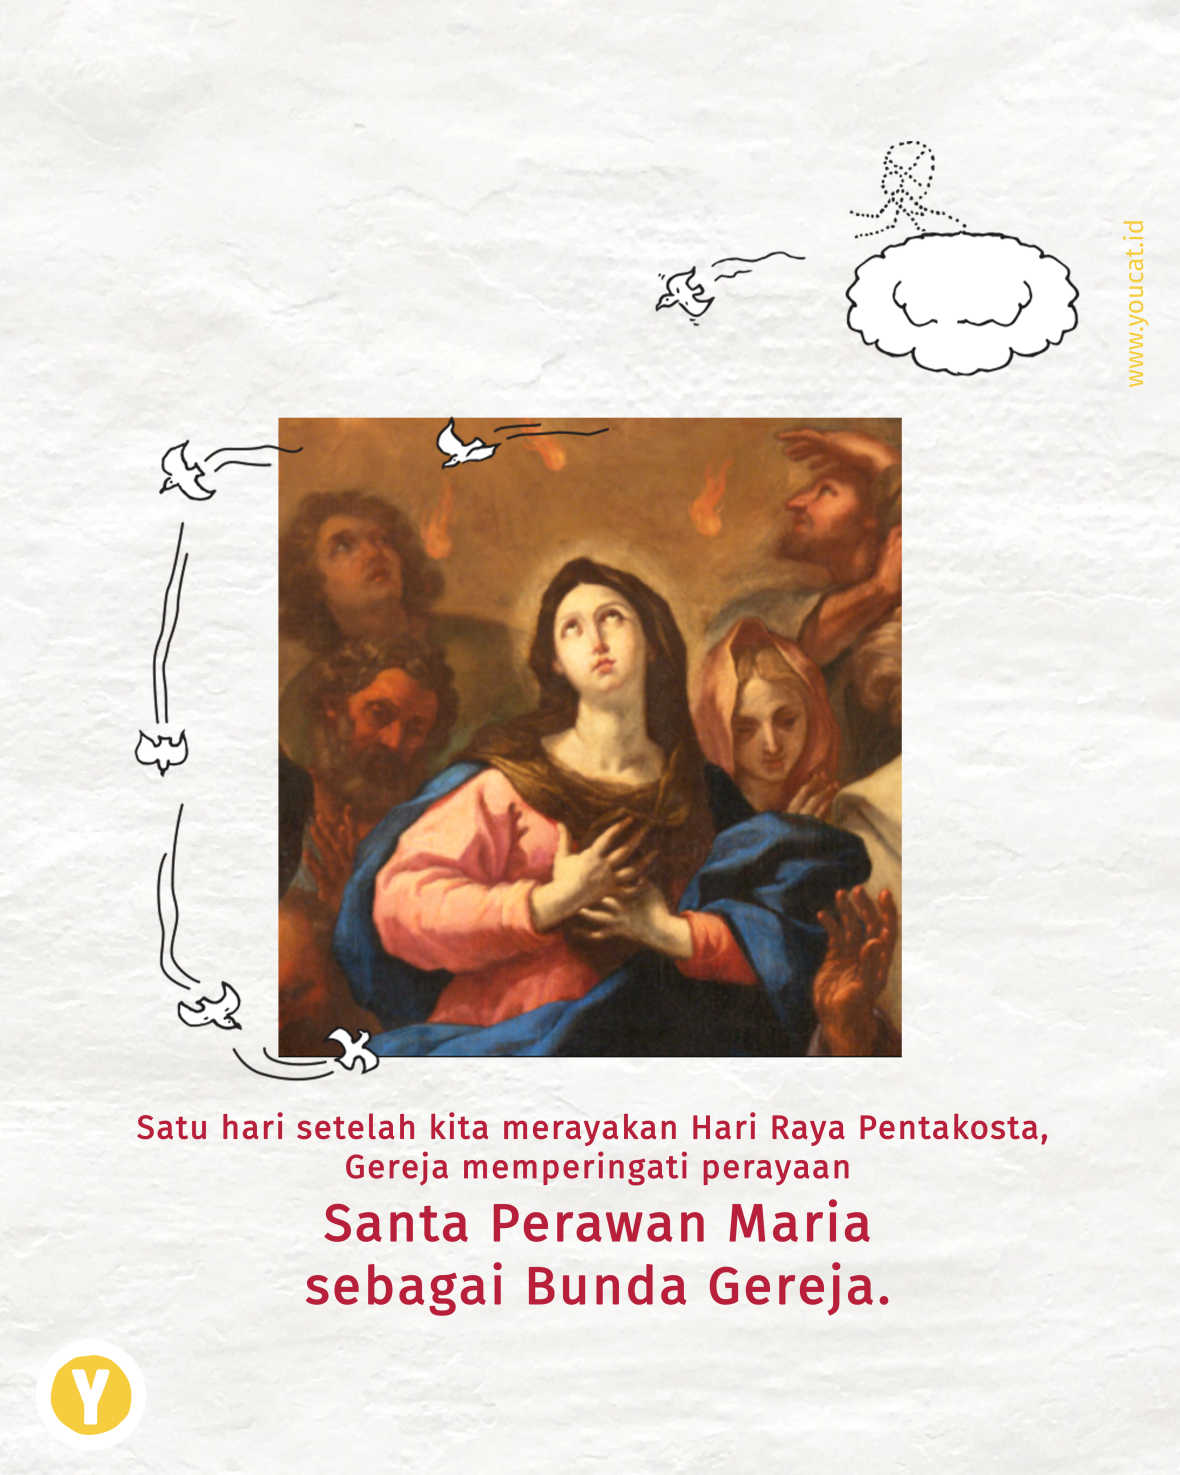 Peran Bunda Maria dalam Pentakosta dan sebagai Bunda Gereja